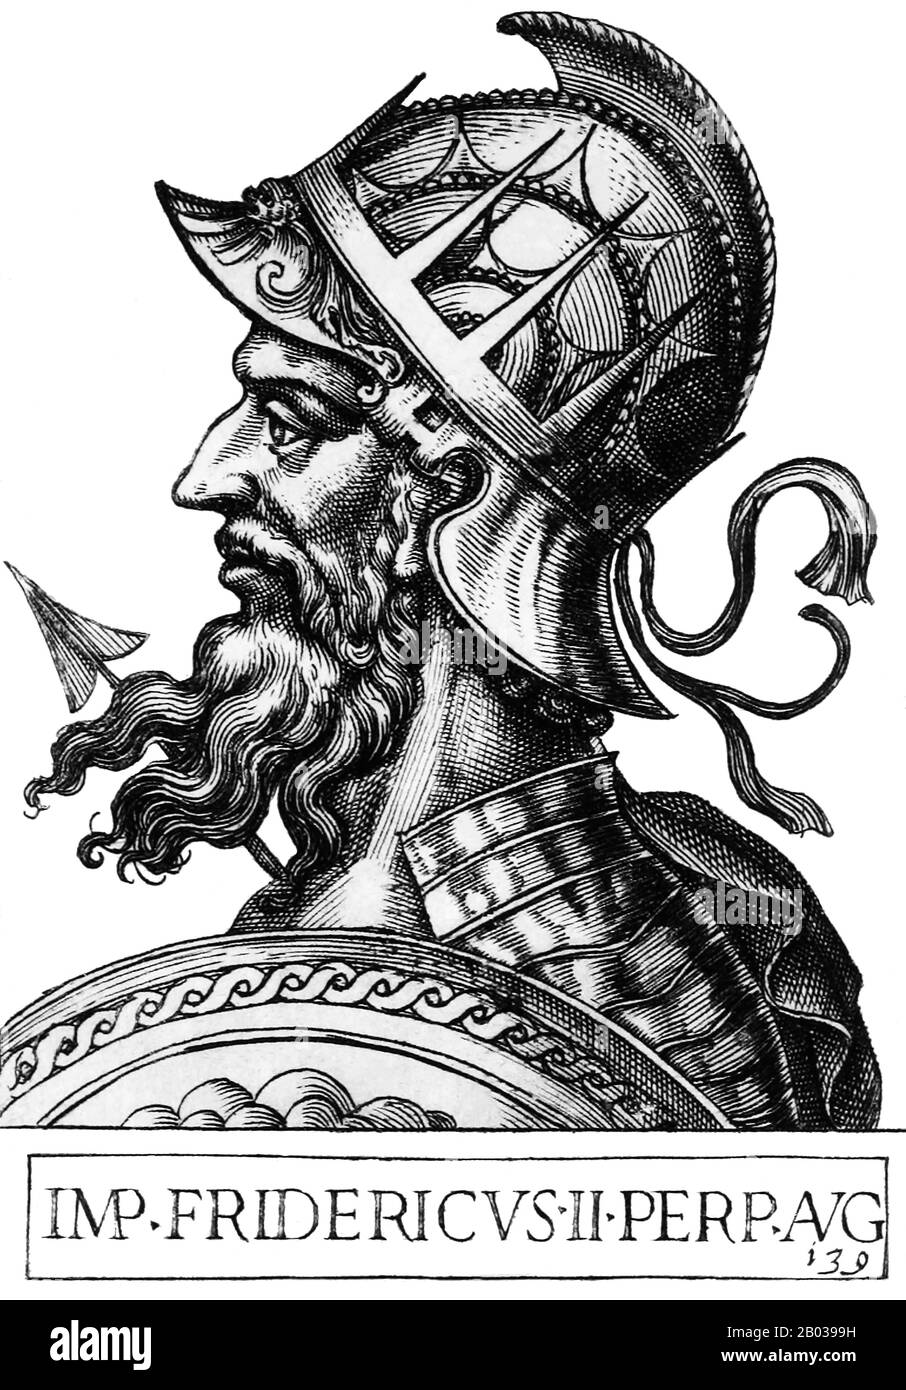 Federico II (1194-1250) era figlio dell'imperatore Enrico VI, ed era solo un bambino quando incoronato re di Sicilia da sua madre nel 1198. Quando sua madre morì lo stesso anno, fu dato a Papa Innocenzo III, che divenne suo guardiano. Quando Federico arrivò di età nel 1208, affermò il suo potere sulla Sicilia. L'imperatore Ottone IV invase l'Italia nel 1209, sperando di conquistare la Sicilia e di portare Federico al calcagno, ma nel 1211 Federico fu eletto in contumacia come Re di Germania da vari principi imperiali nutriti con il dominio di otto. Federico entrò in Germania con un piccolo esercito e fu formalmente incoronato Re di Germania Foto Stock